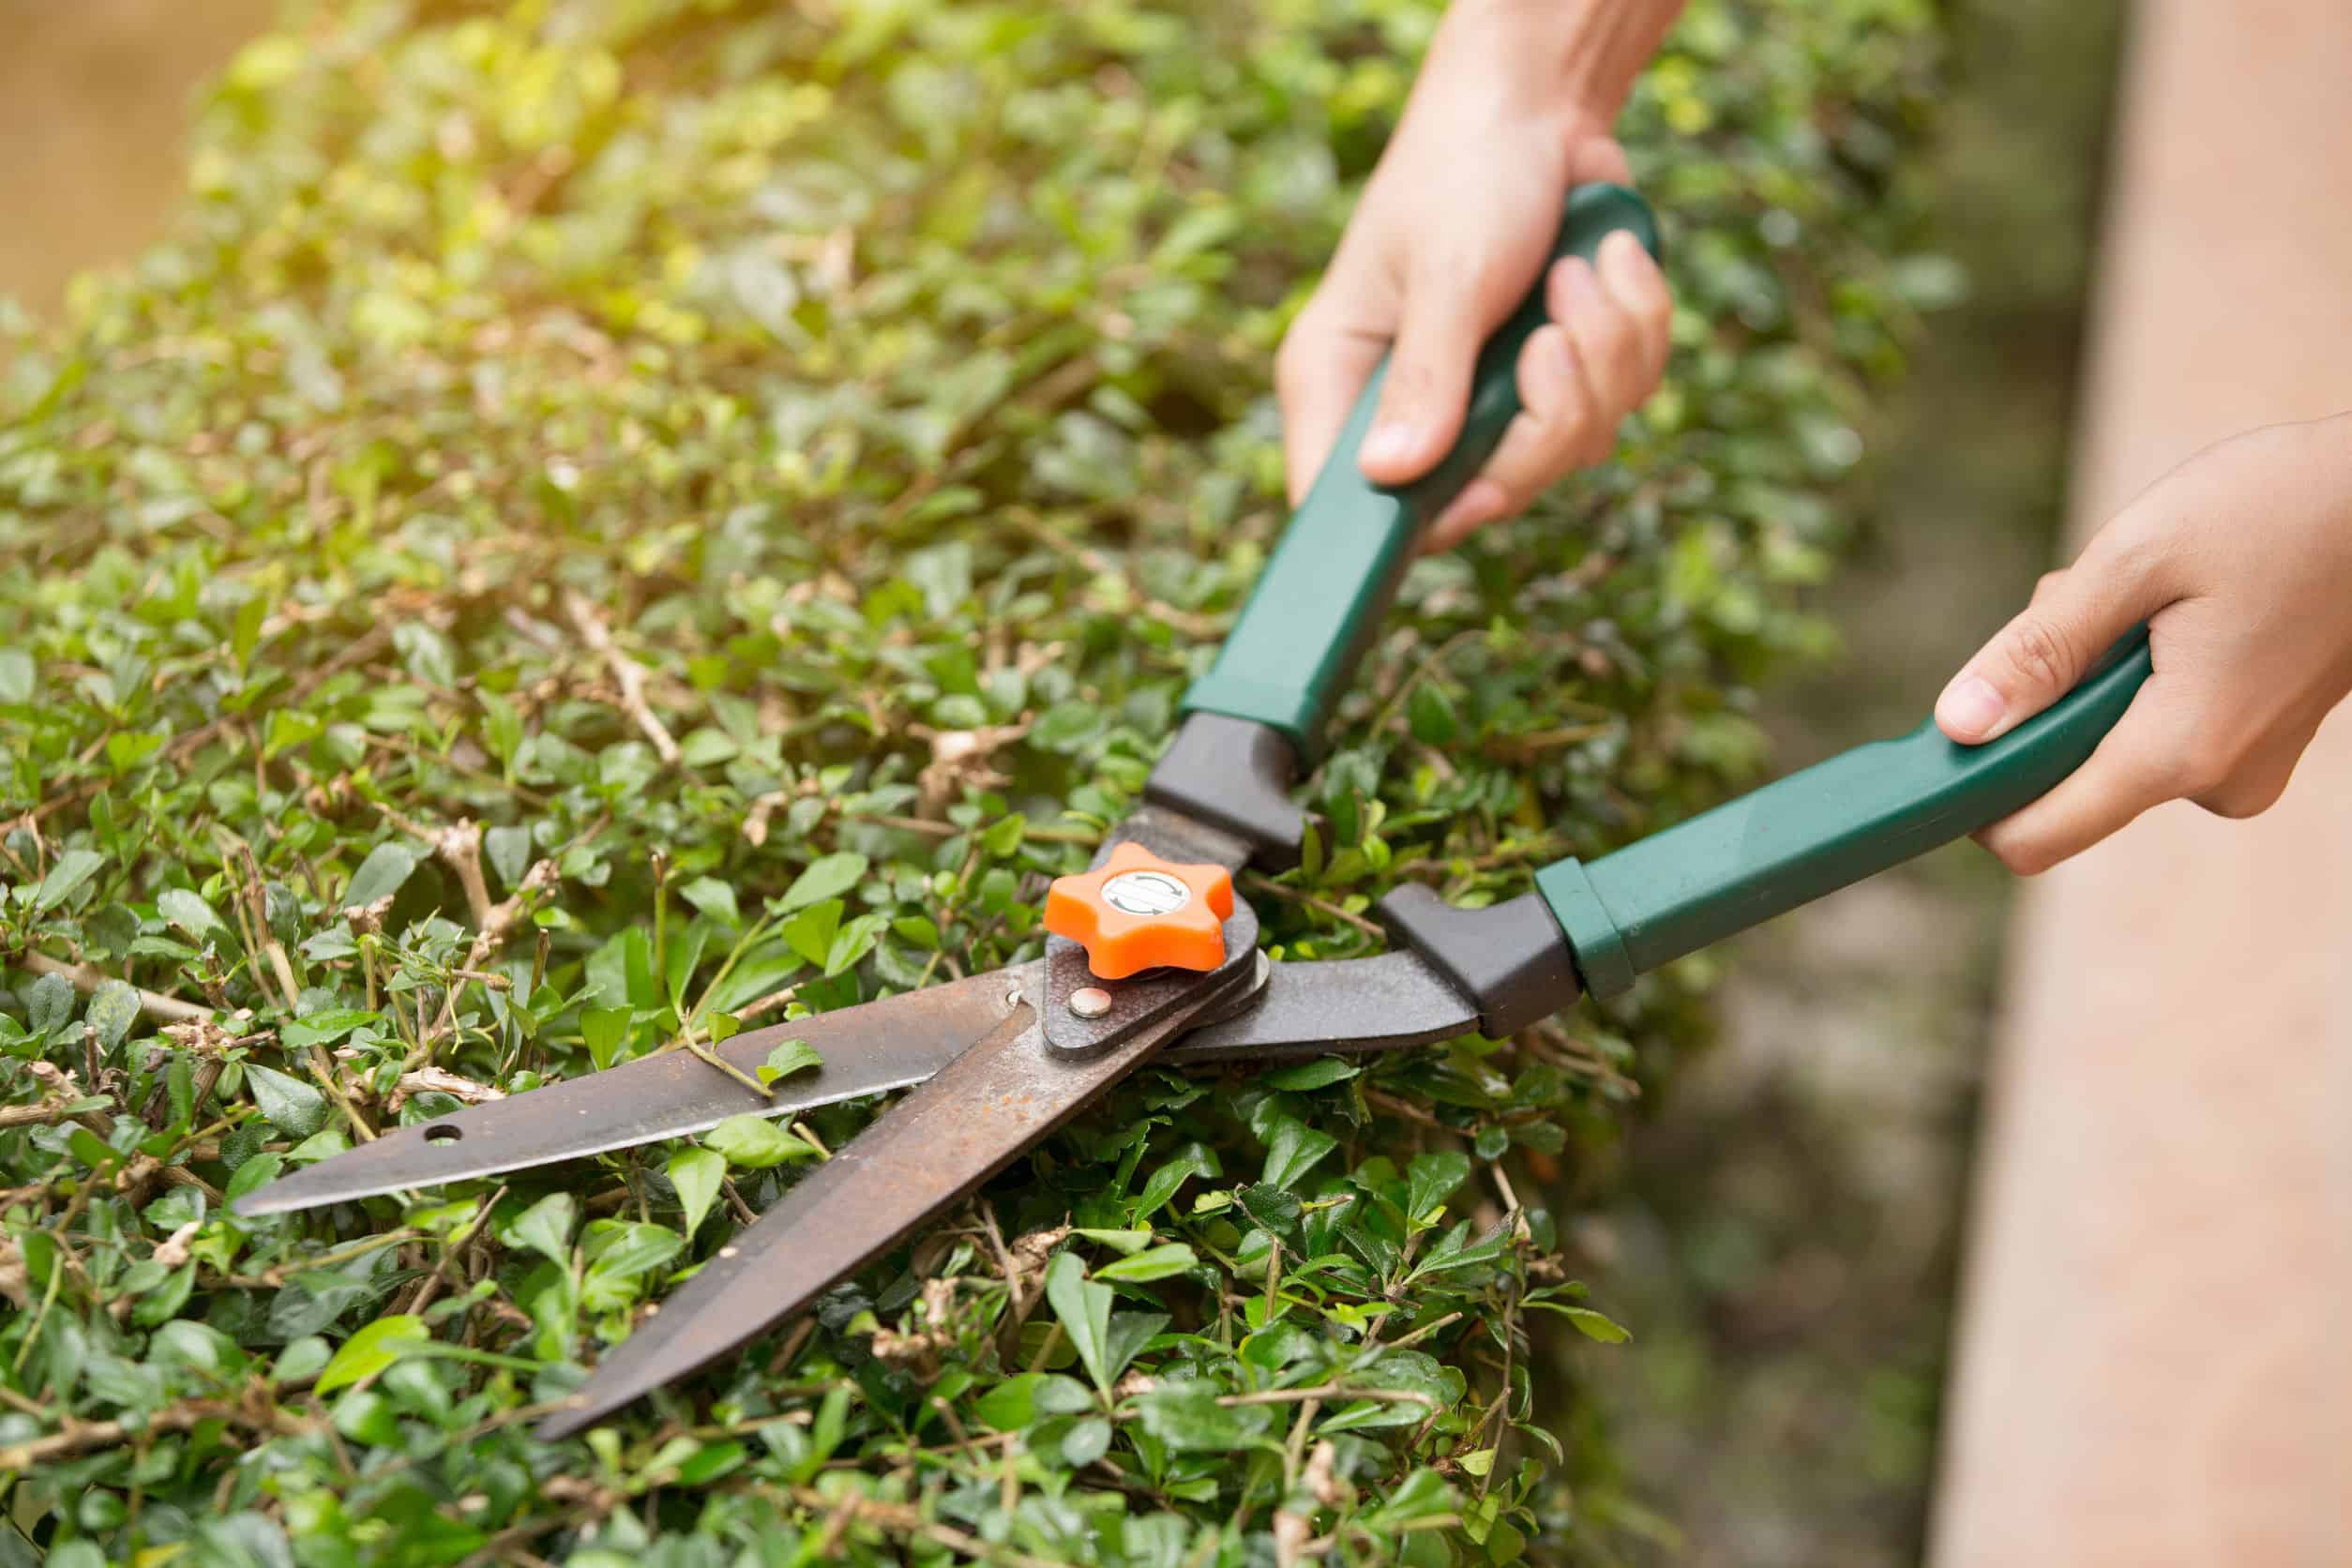 Tijeras de jardinería fáciles de usar para un corte perfecto en ramas y  setos vivos. Resistentes al desgaste, mantendrán el aspecto de sus plantas.  — Torotrac - Todo para tu Finca, granja